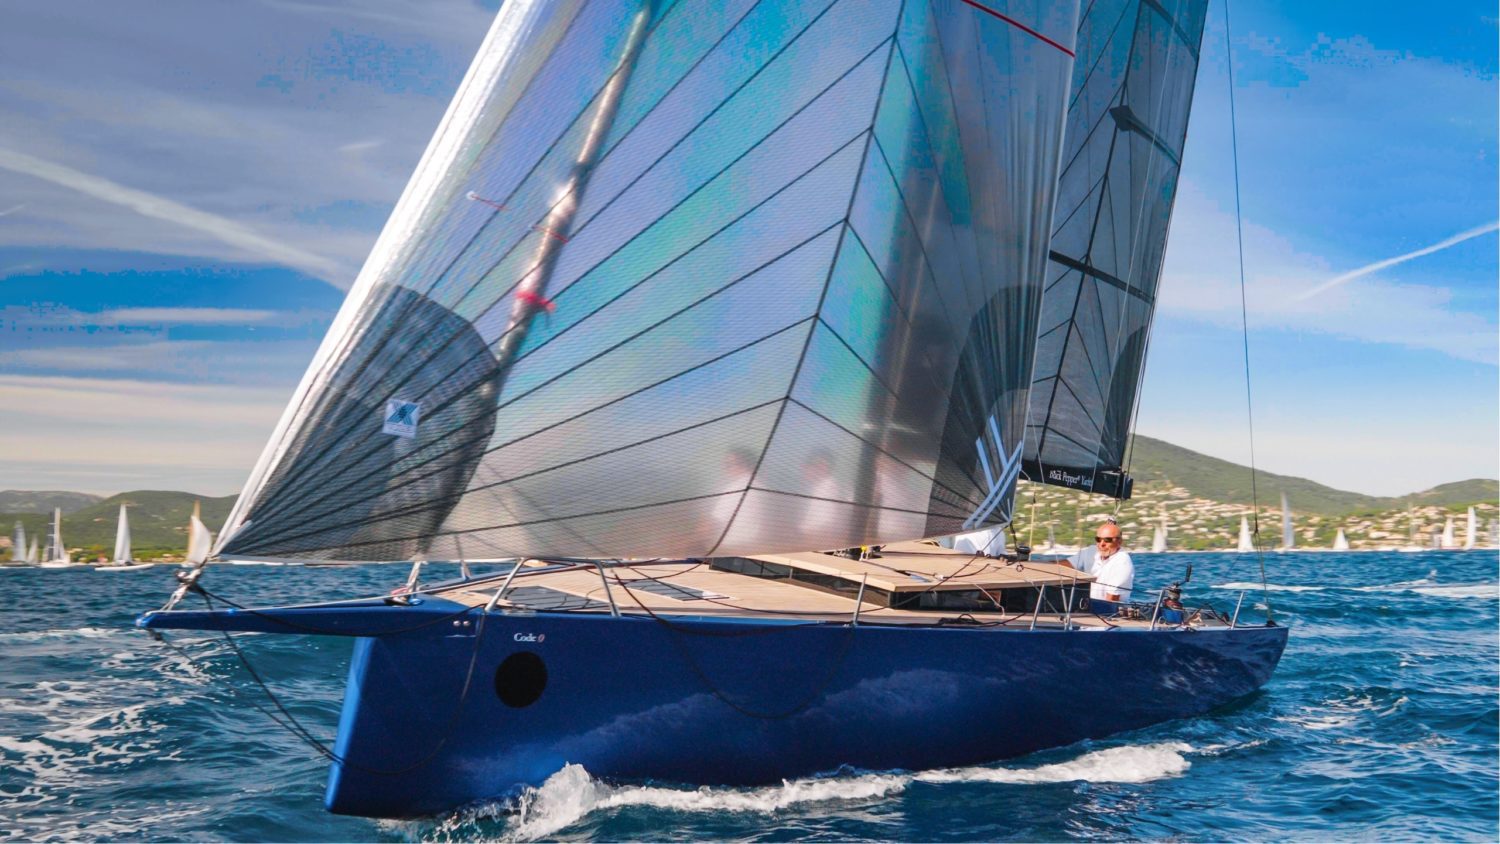 Wood and boat, importateur exclusif Black Pepper Yachts pour la Suisse